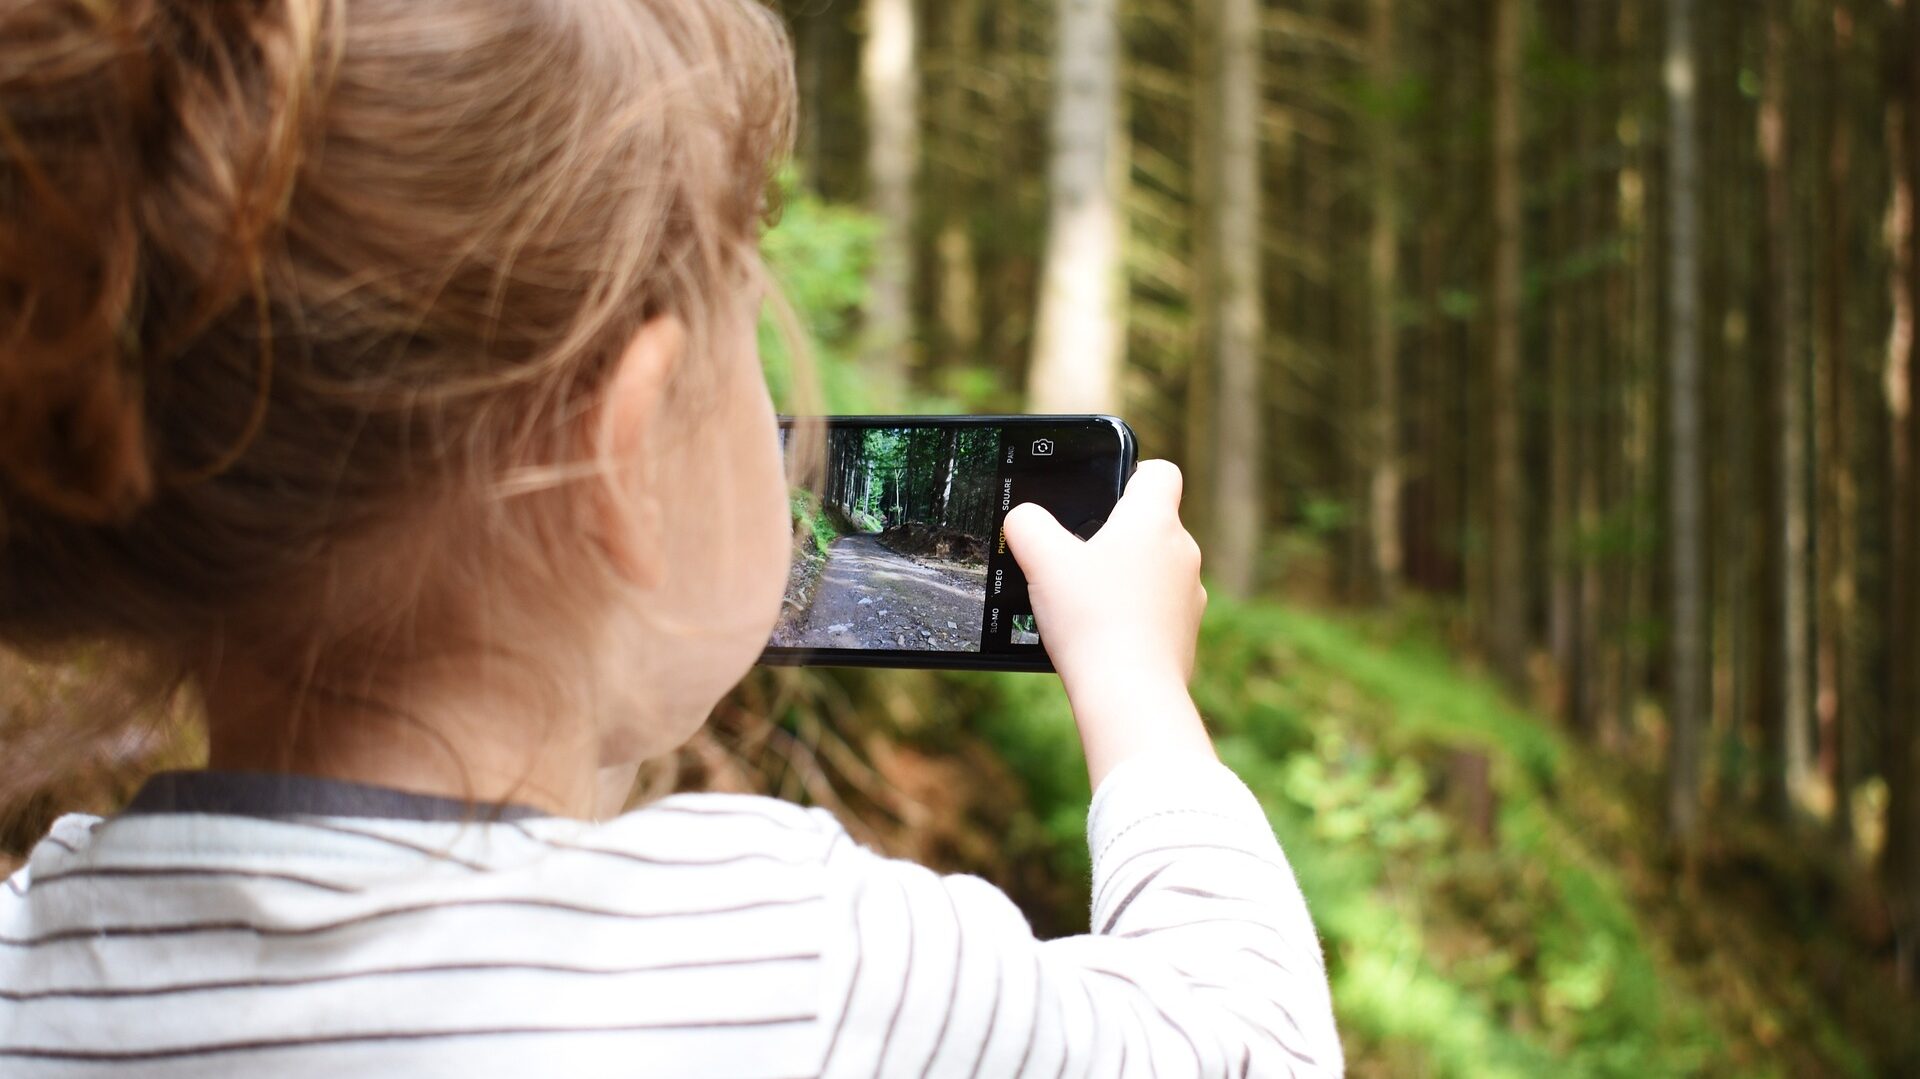 kleines Kind in Rückansicht, das mit einem Handy einen Waldweg fotografiert